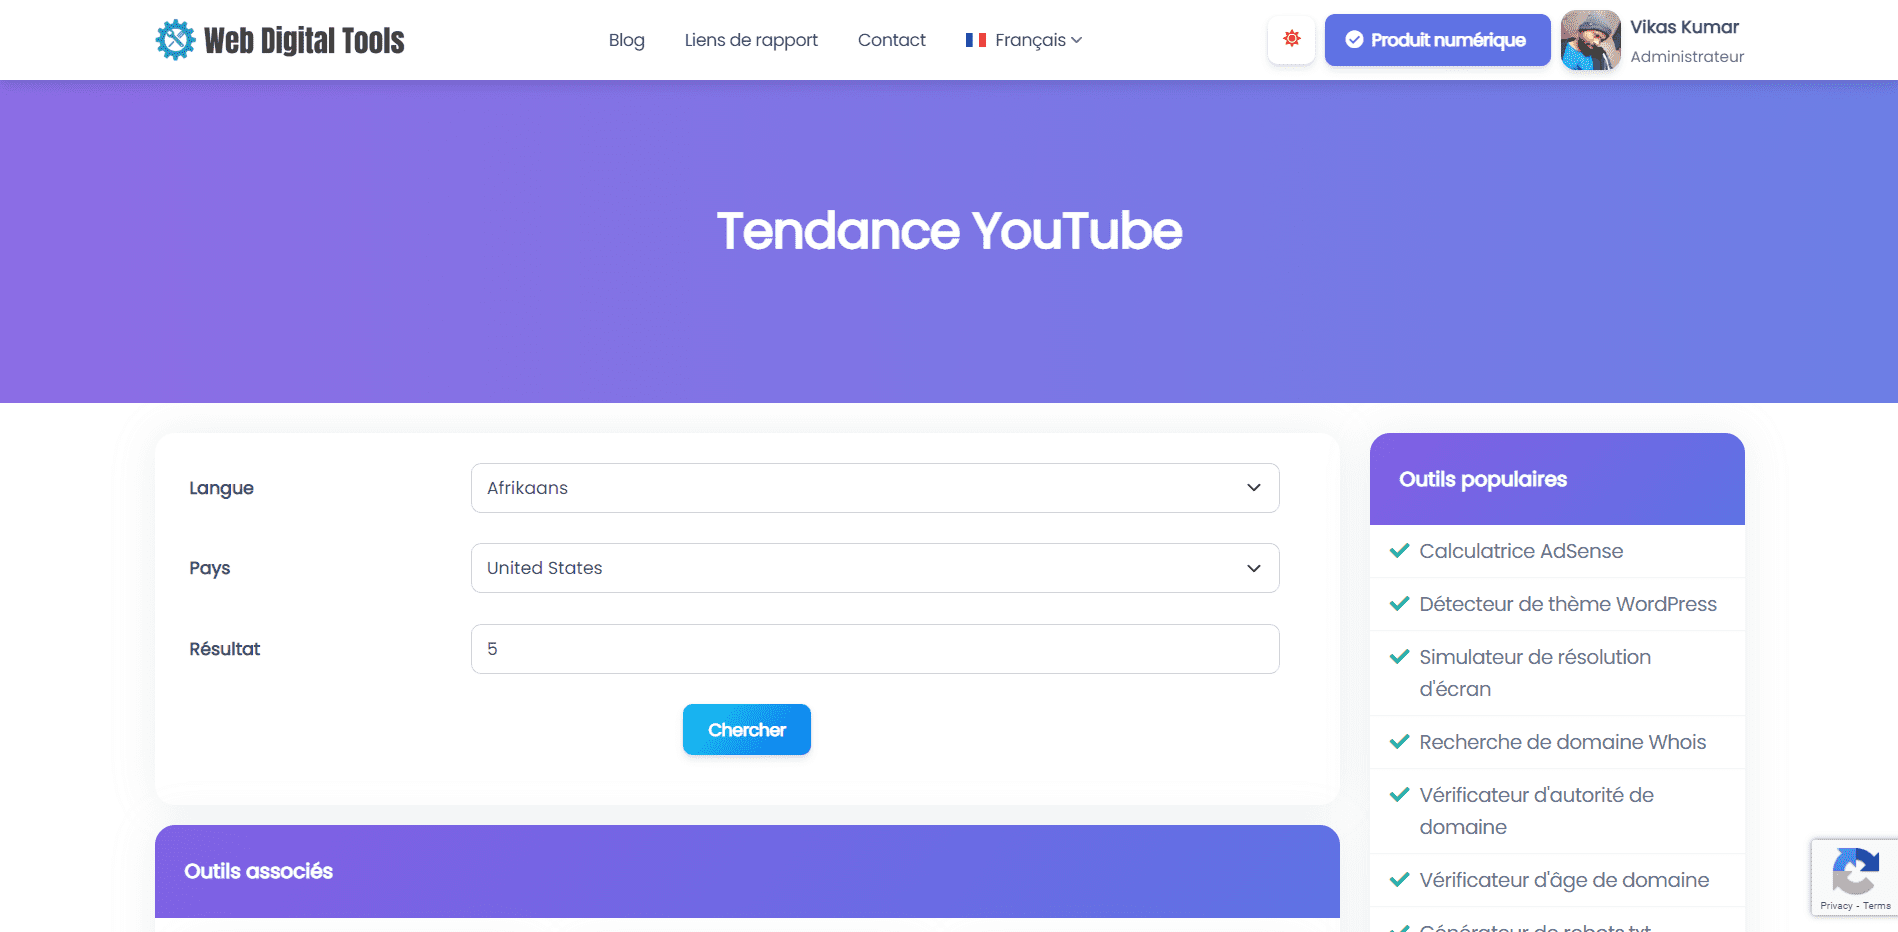 Tendance YouTube